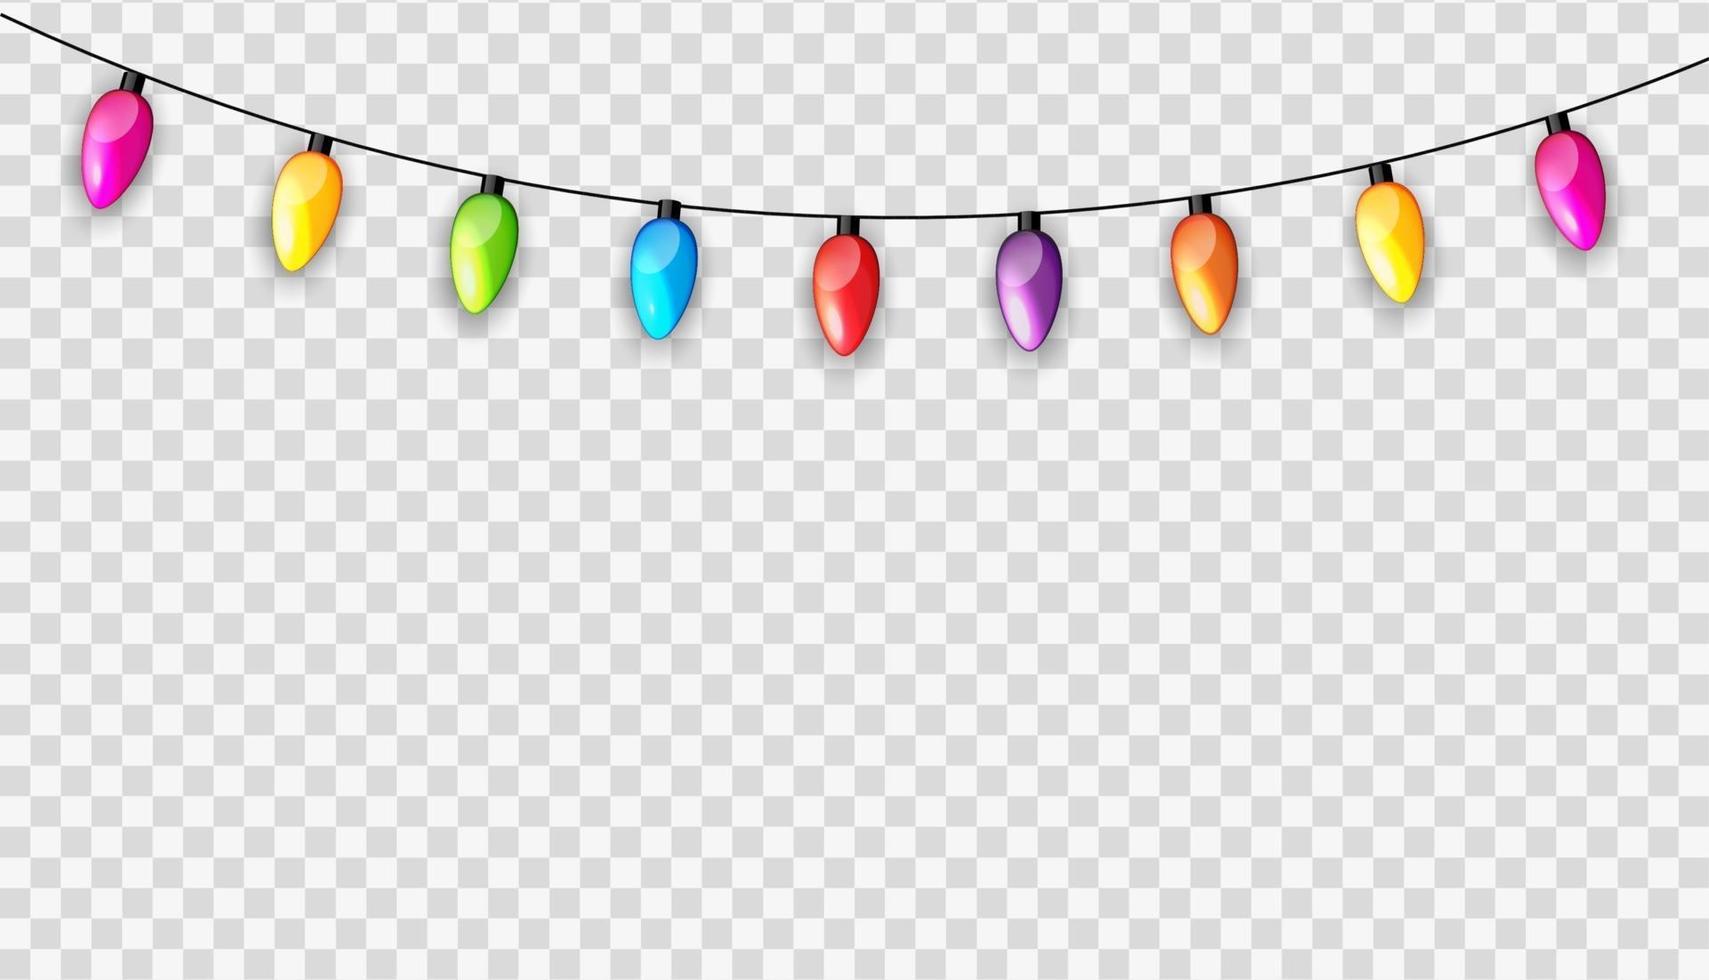 Bombillas de lámpara de guirnalda multicolor festivas aisladas en la ilustración de vector de fondo transparente